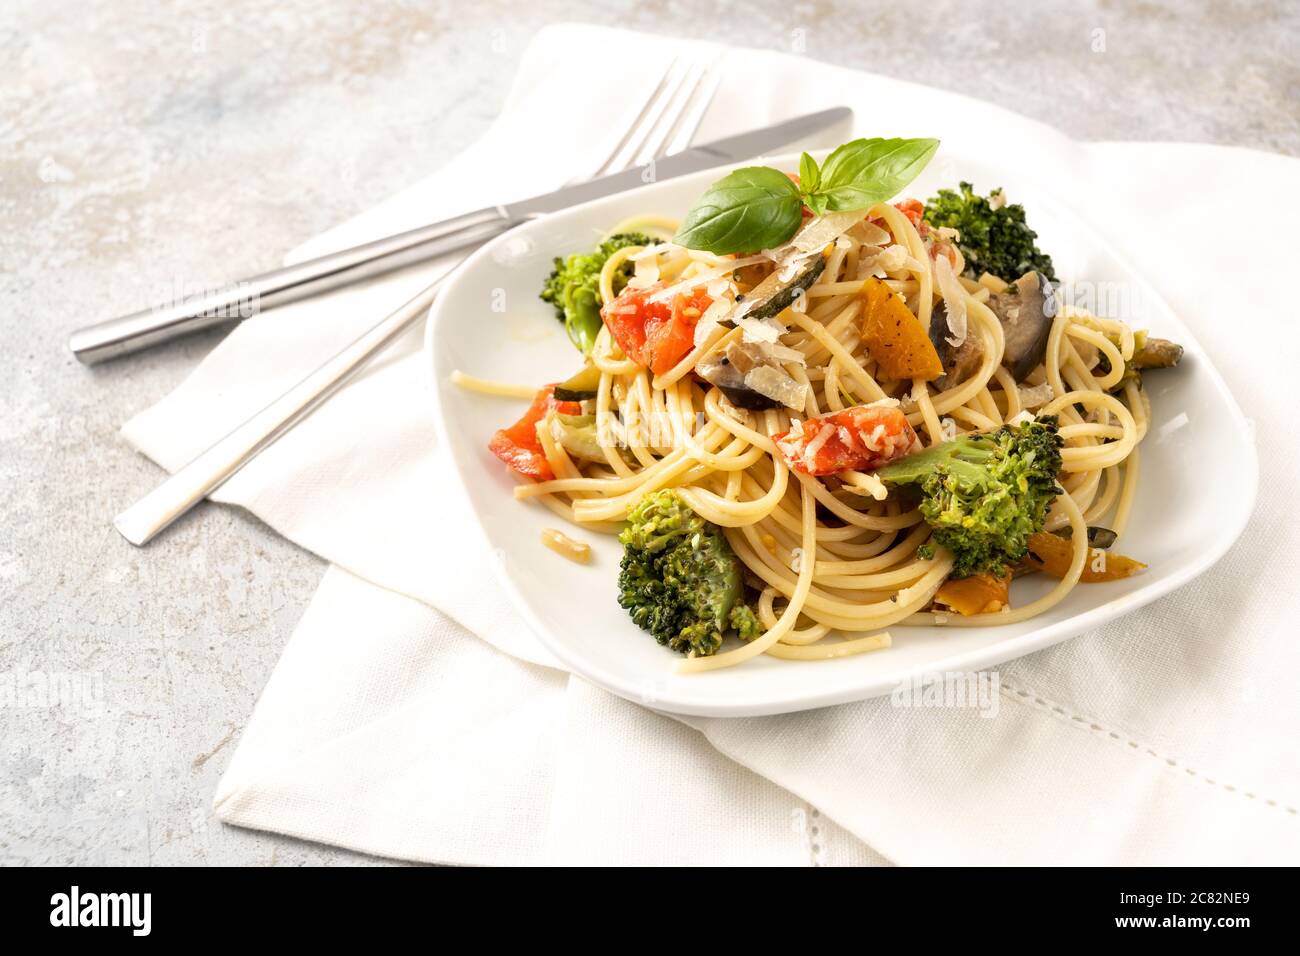 Vegetarische Spaghetti mit Brokkoli, Tomaten, Paprika und Auberginen, gesunde mediterrane Pasta-Mahlzeit auf einem weißen Teller und ein leichter rustikaler Backgroun Stockfoto